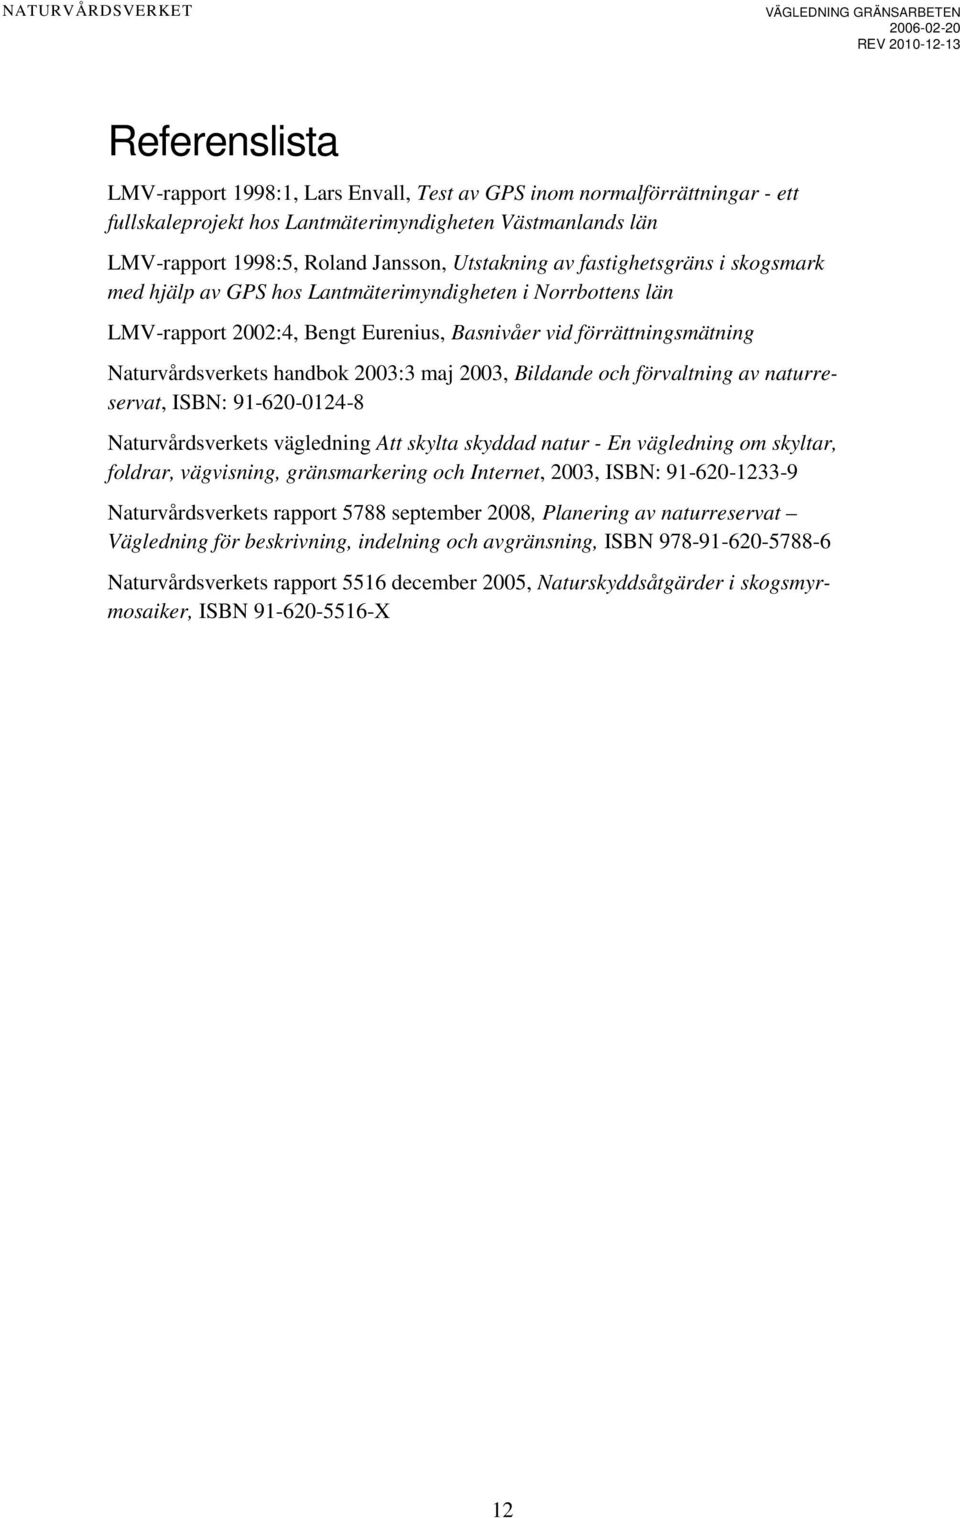 2003, Bildande och förvaltning av naturreservat, ISBN: 91-620-0124-8 Naturvårdsverkets vägledning Att skylta skyddad natur - En vägledning om skyltar, foldrar, vägvisning, gränsmarkering och